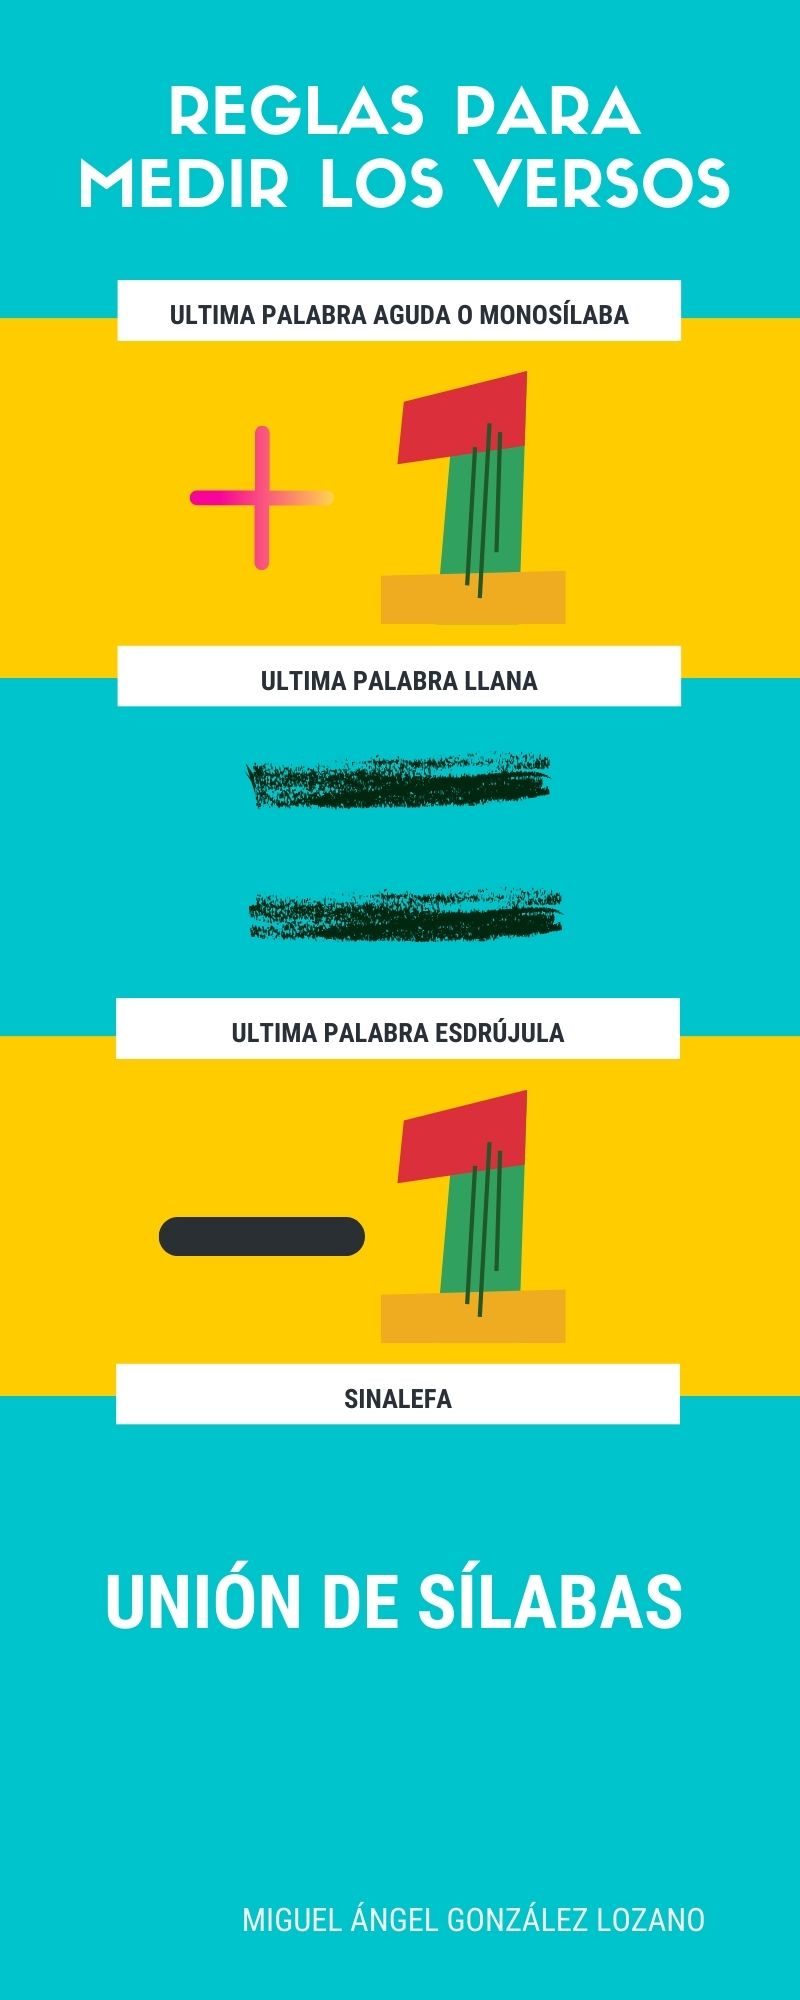 Infografía "Reglas para medir los versos".